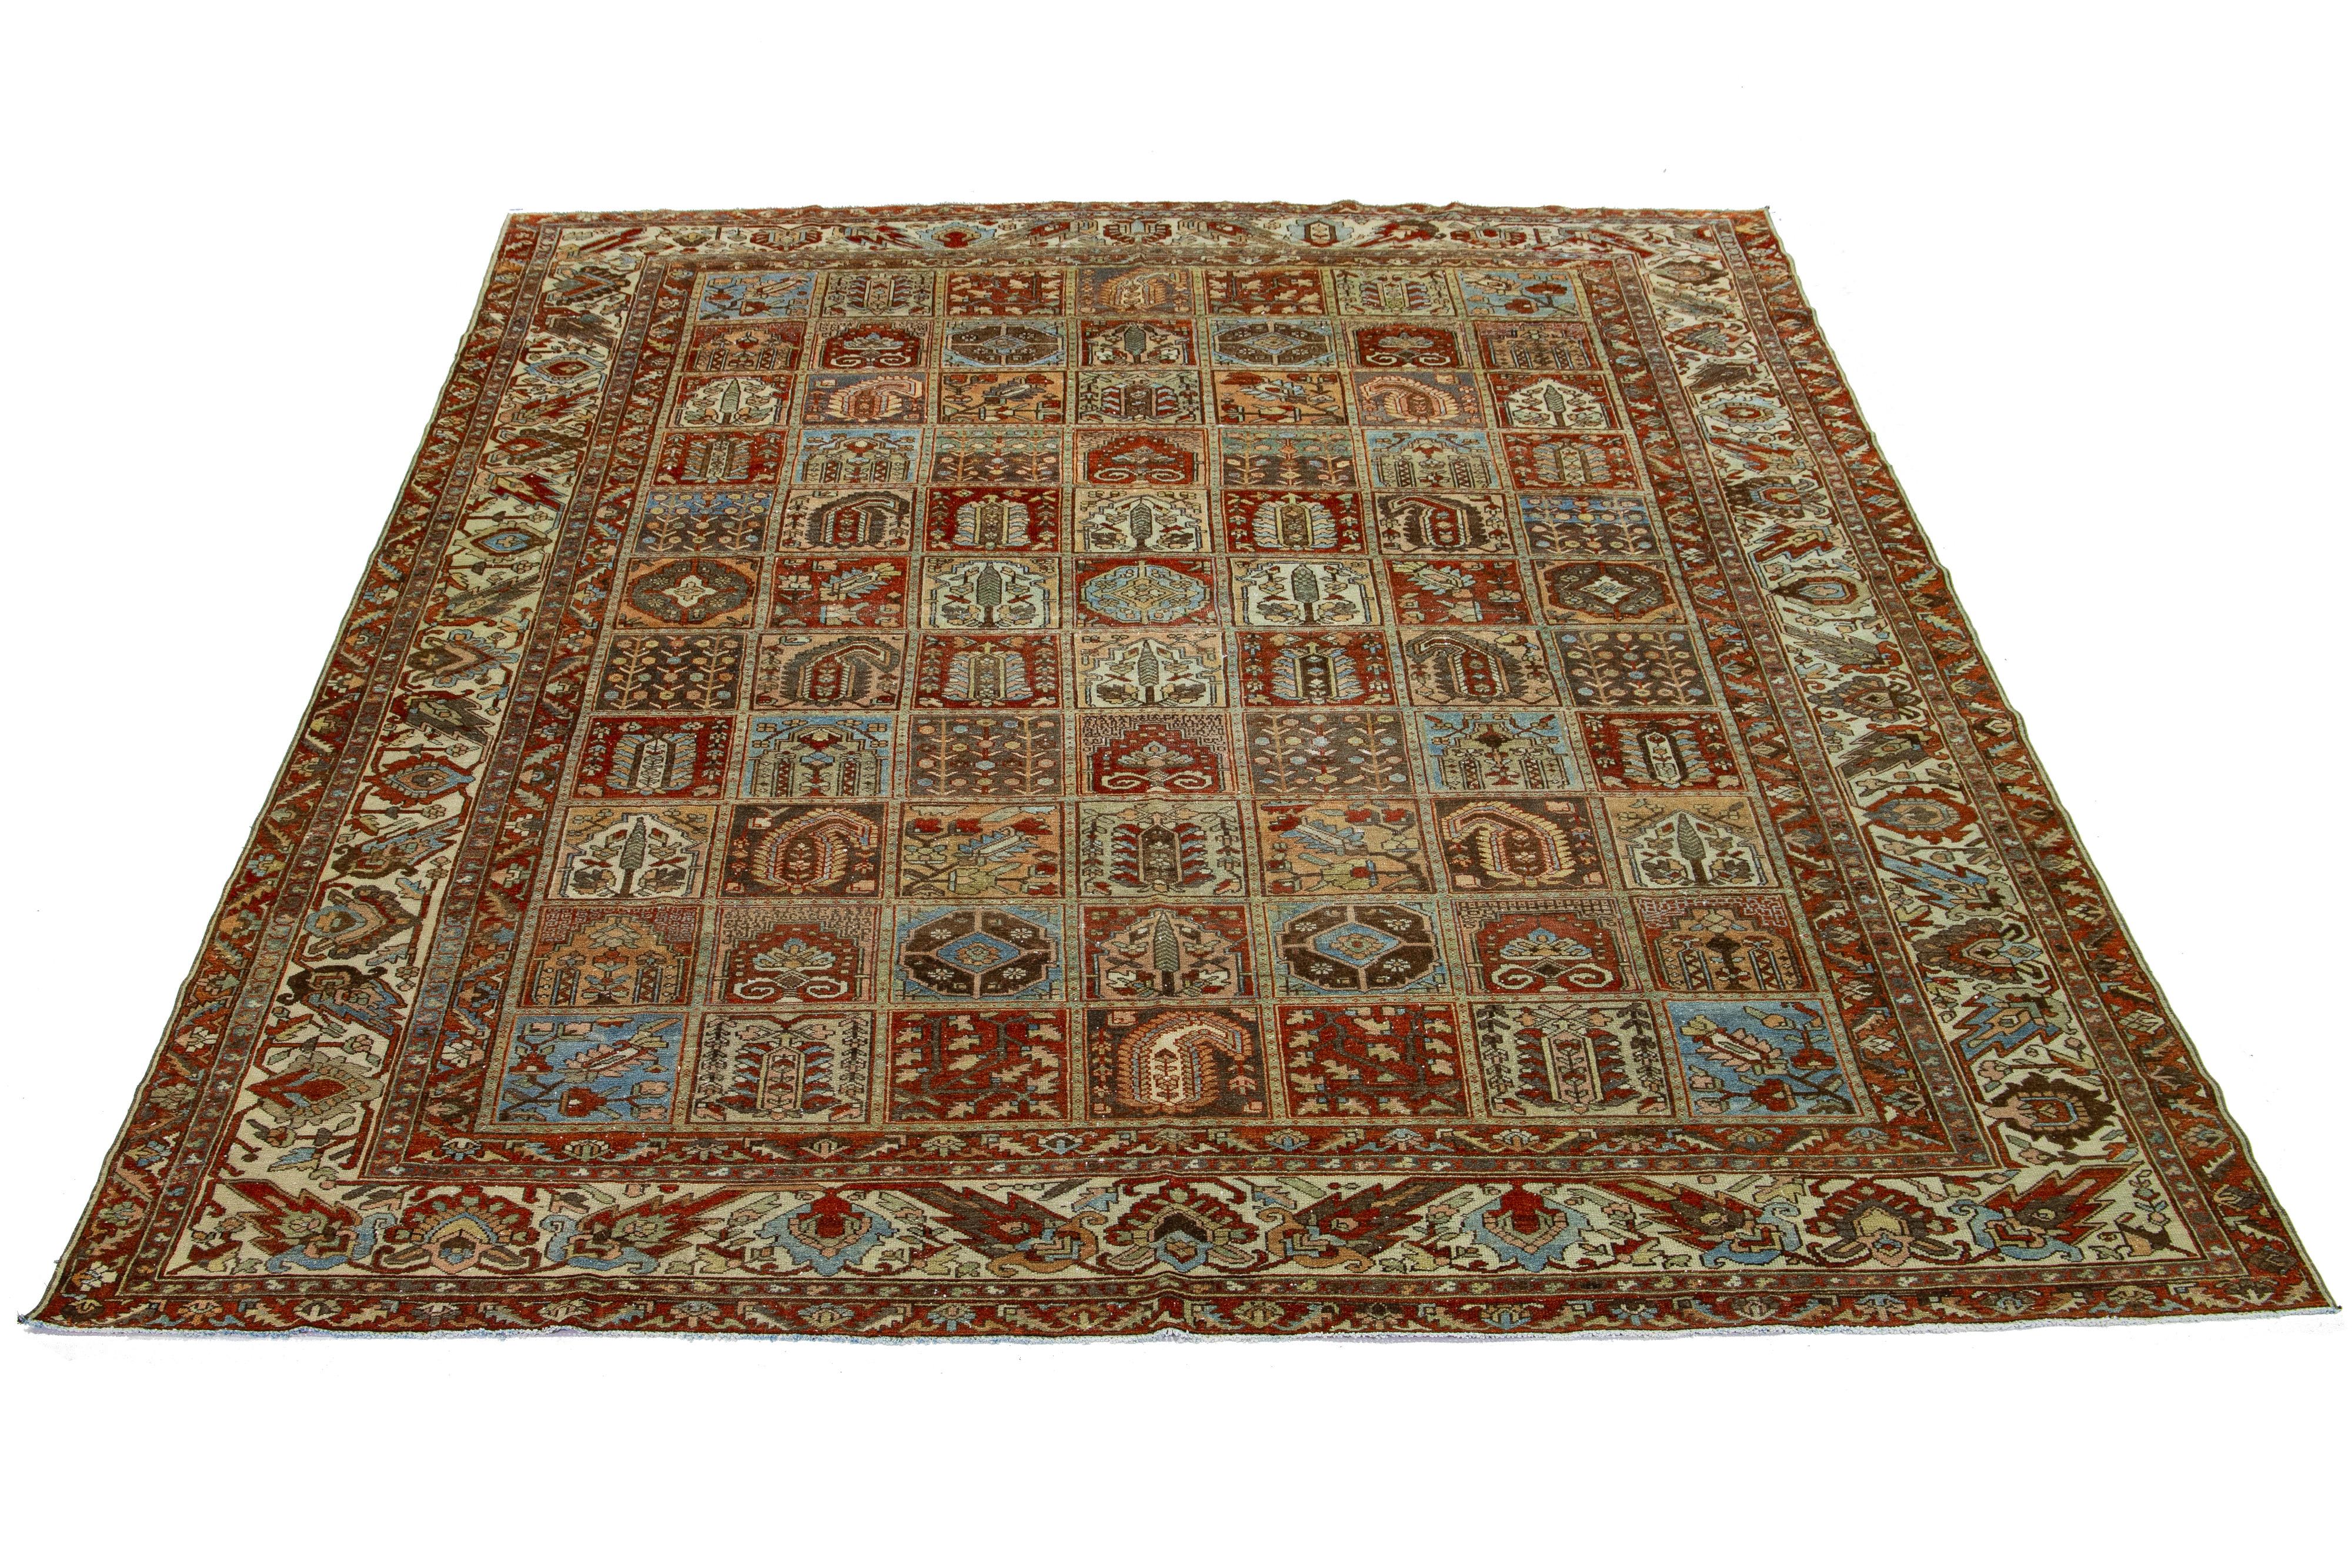 Schöner antiker Bachtiari-Teppich aus handgeknüpfter Wolle mit einem blauen, rostroten, beigen und pfirsichfarbenen Farbfeld. Dieses persische Stück hat ein geometrisches, florales Allover-Muster.

Dieser Teppich misst 10'6